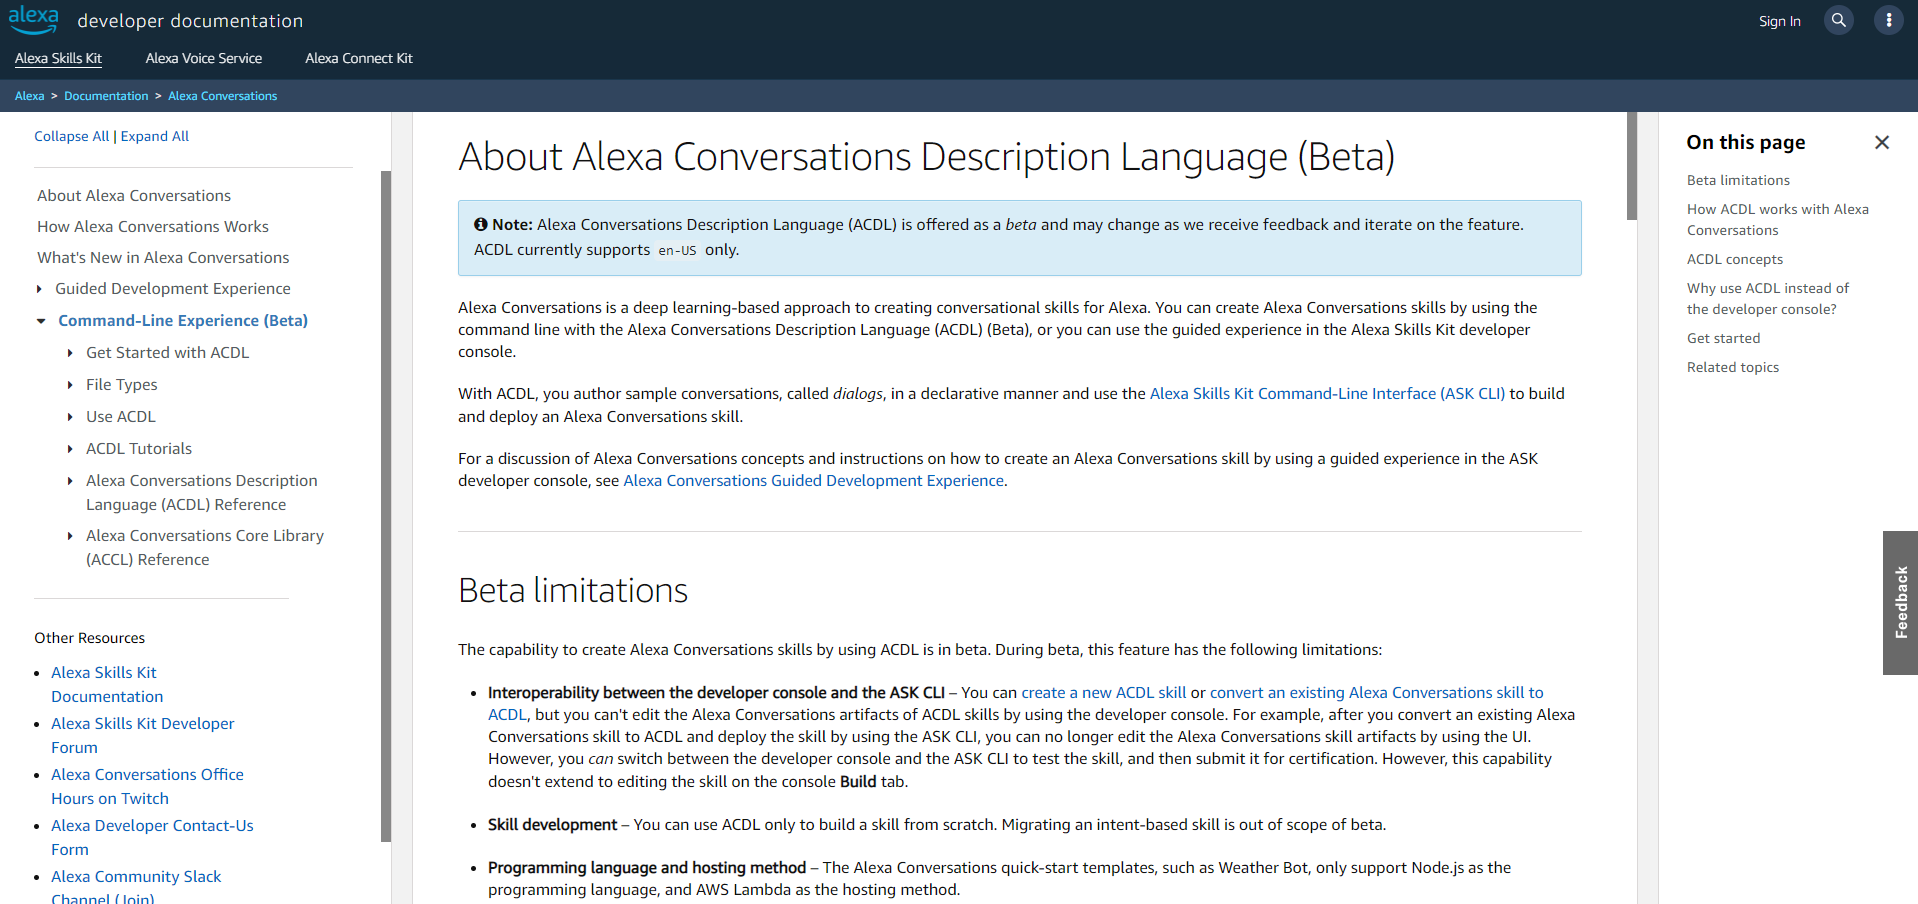 About Alexa Conversations Description Language (ACDL) - Technical Documentation